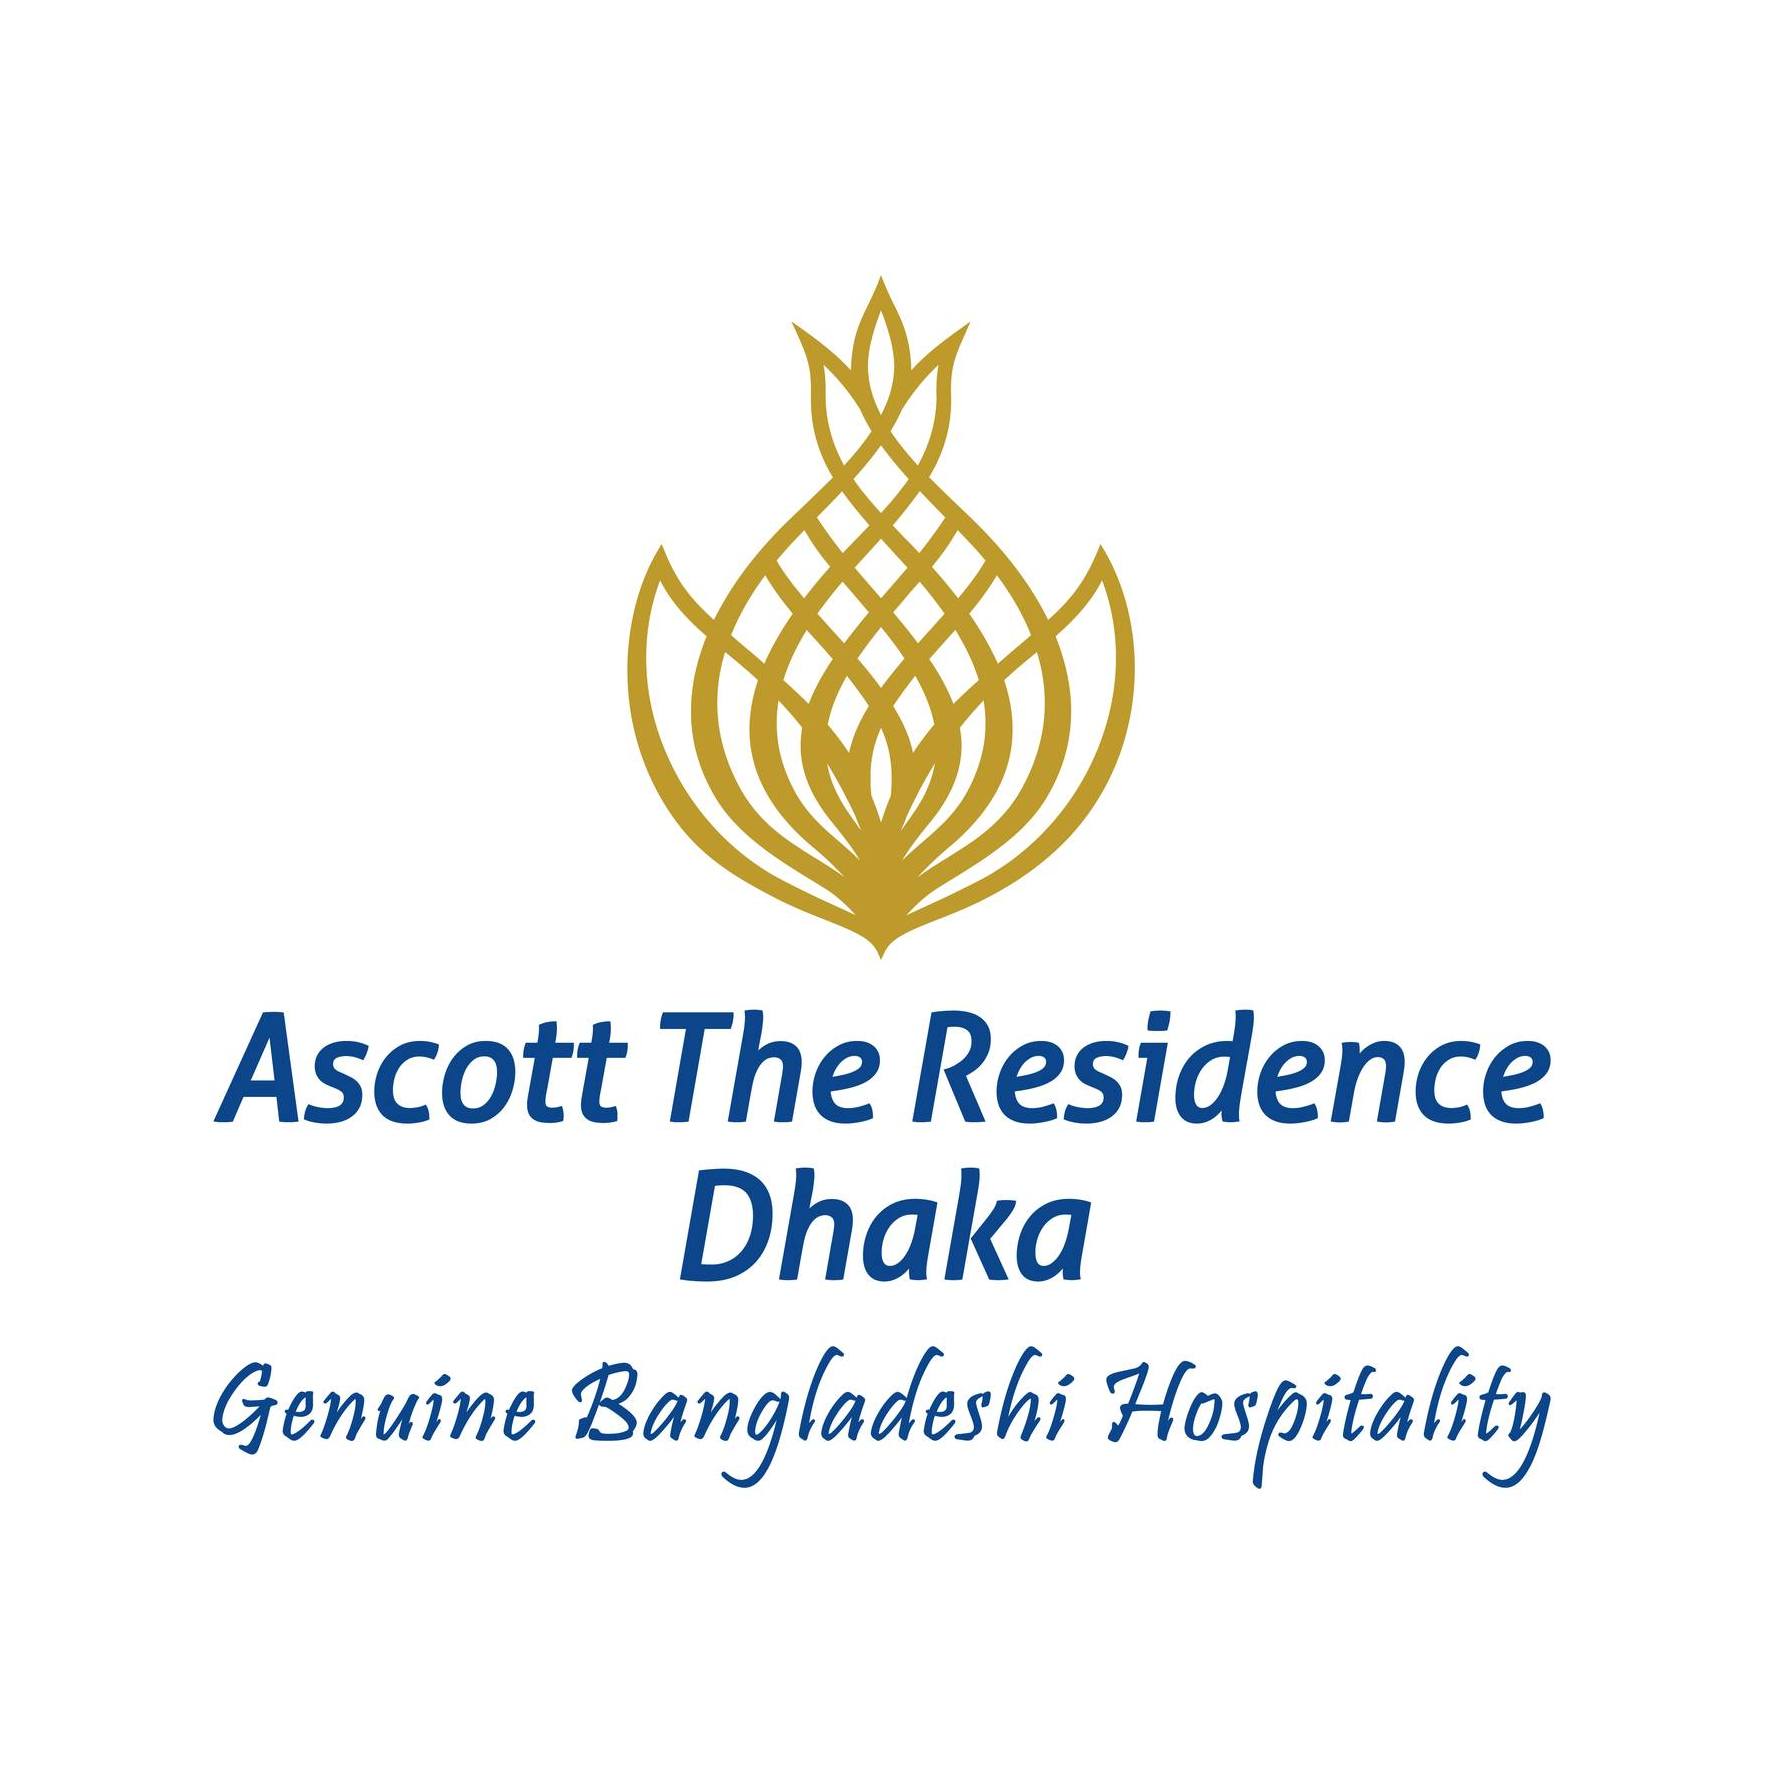 Ascott The Residence Dhaka